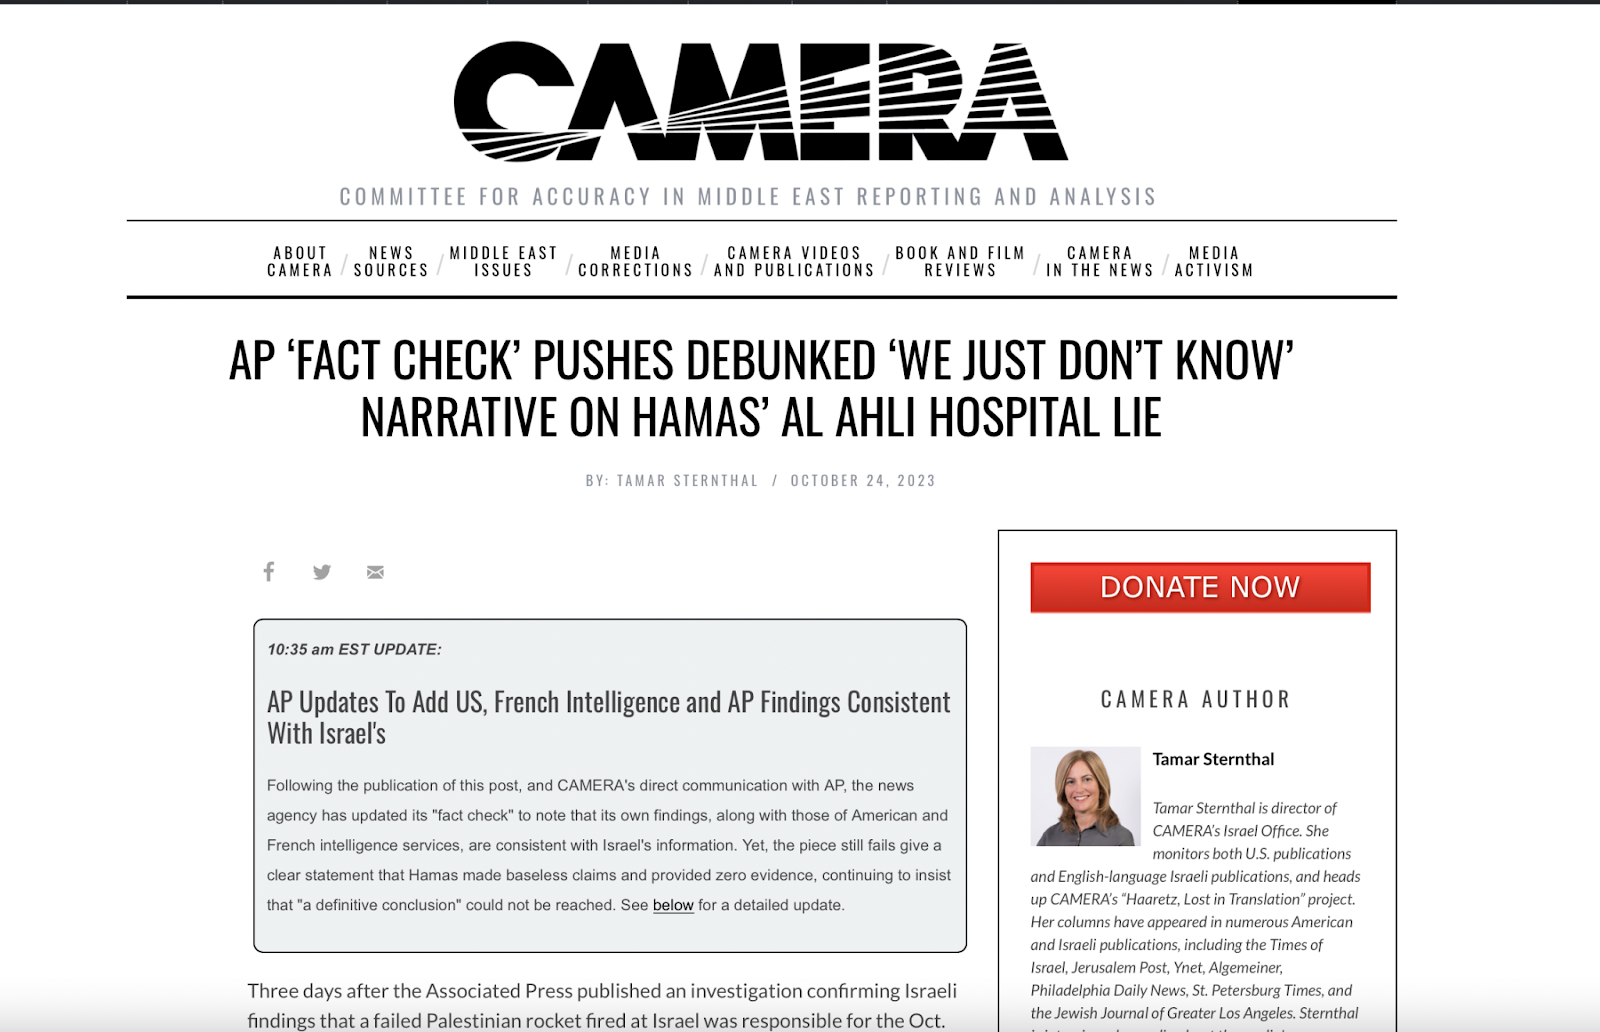 كاميرا وجهت انتقادات شديدة اللهجة لوكالة أسوشييتد برس لأنها لم تتبنى الرواية الإسرائيلية بشكل مطلق - موقع منظمة كاميرا